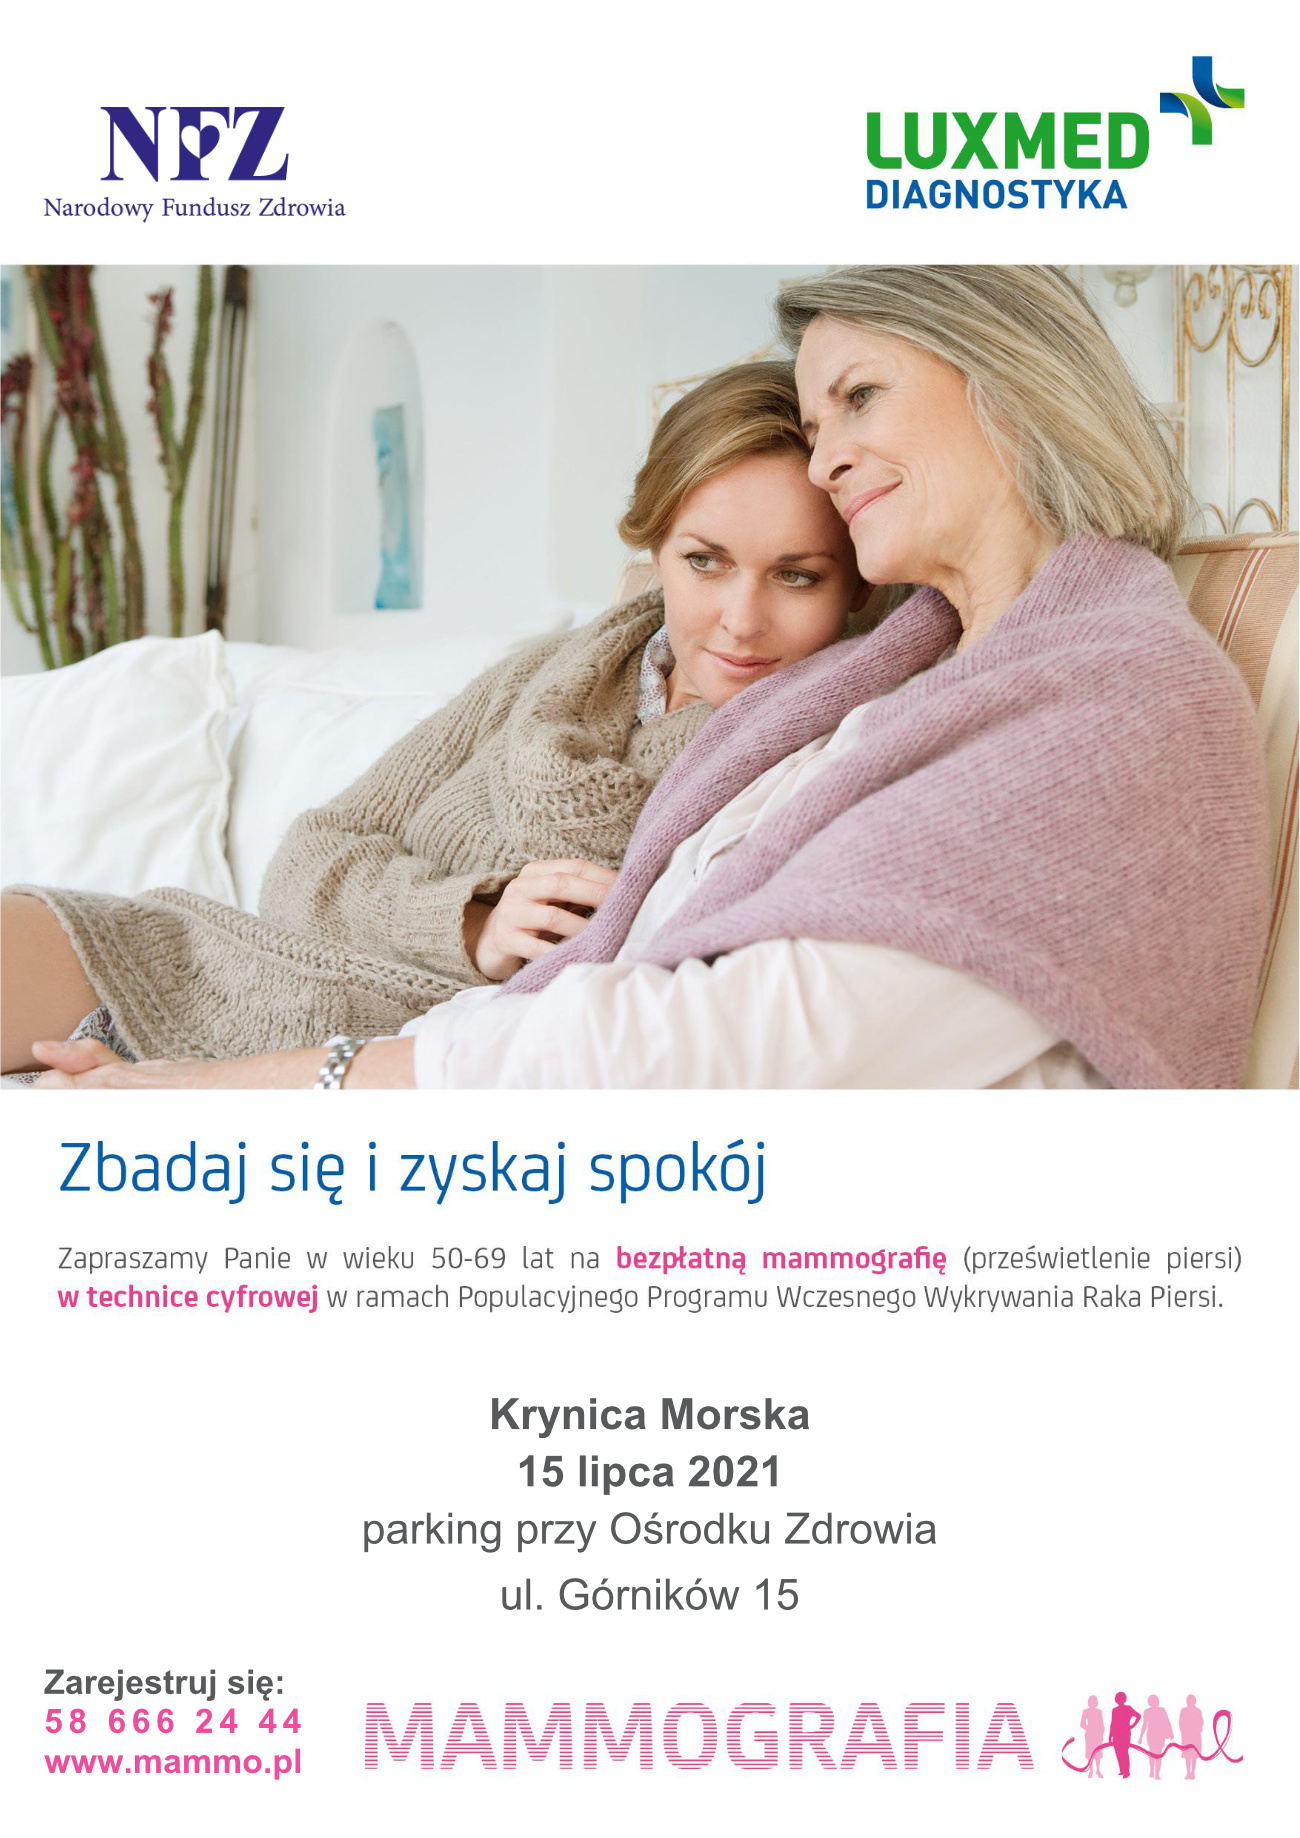 Bezpłatne badanie mammograficzne - plakat